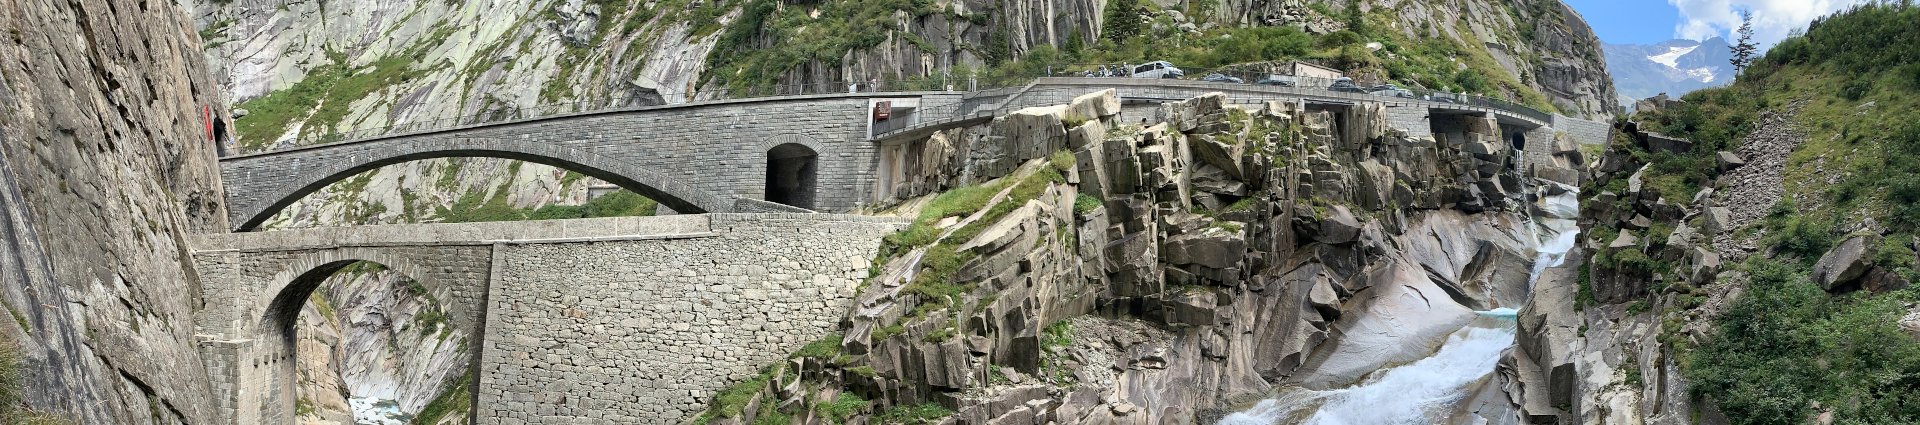 Die Teufelsbrücke mit Steilschlucht in Andermatt, Schweiz. Brücken und Mauern machen die wilde Klamm zugänglich.